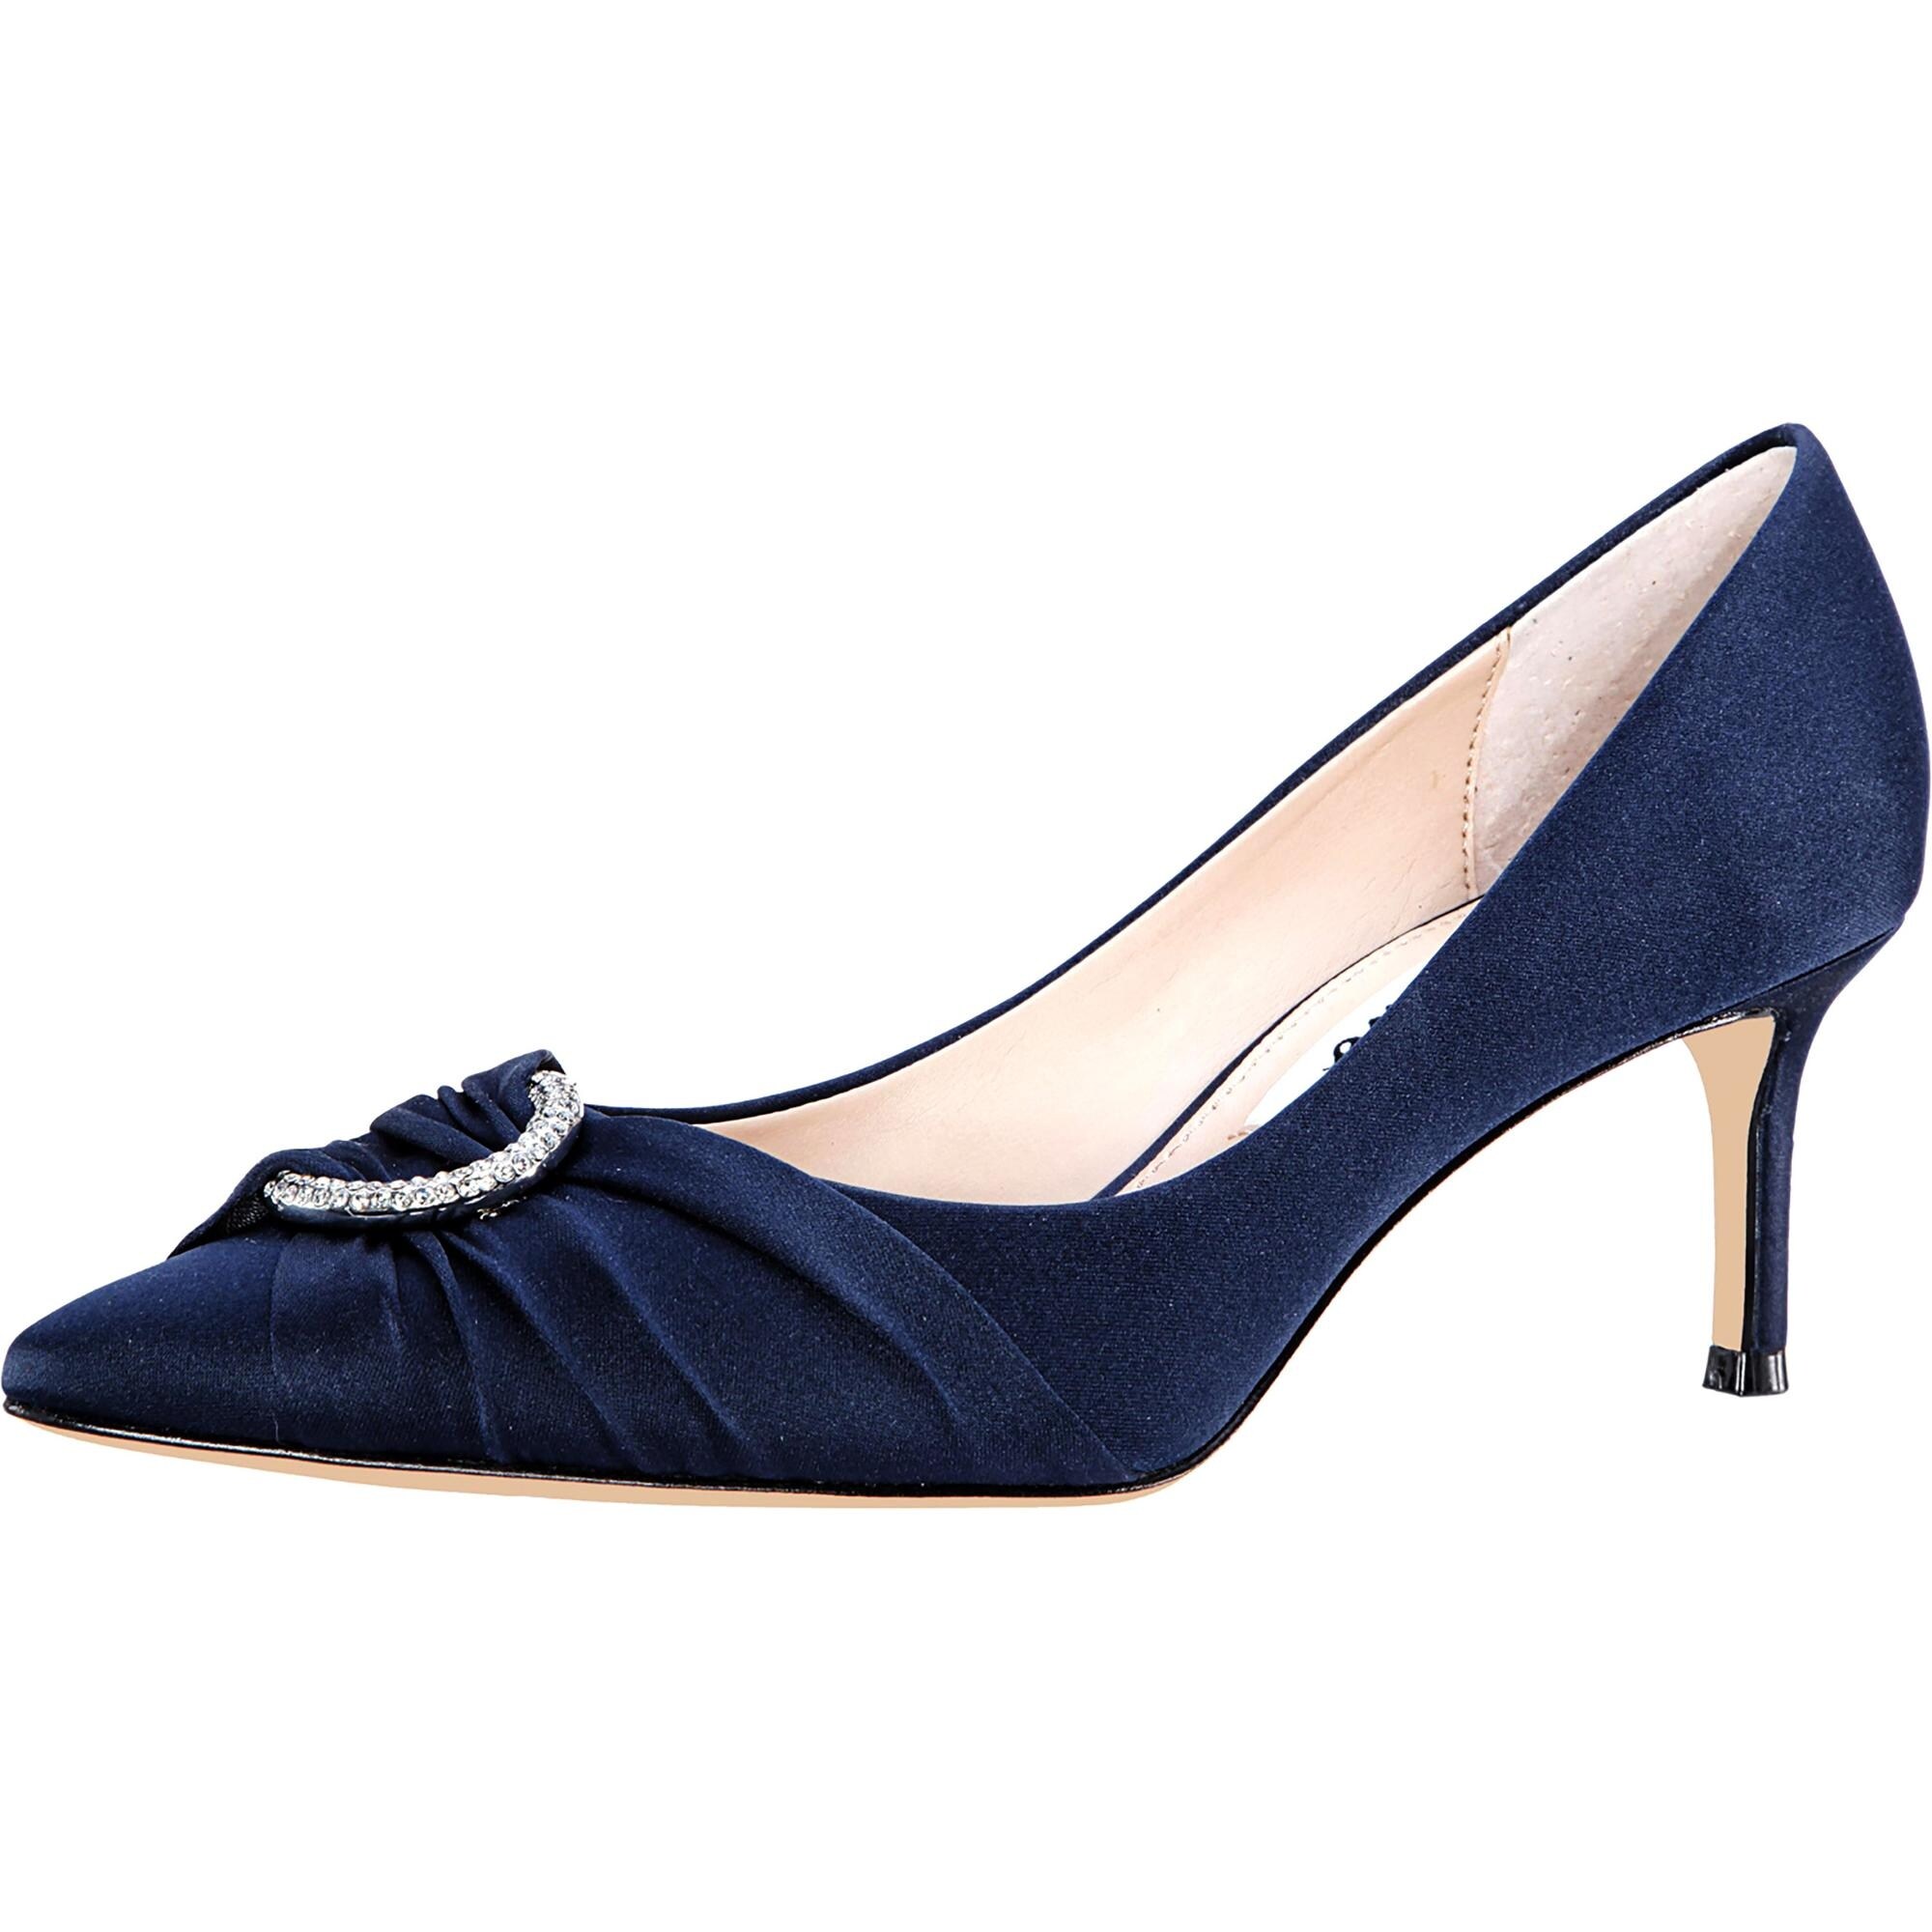 navy blue embellished heels